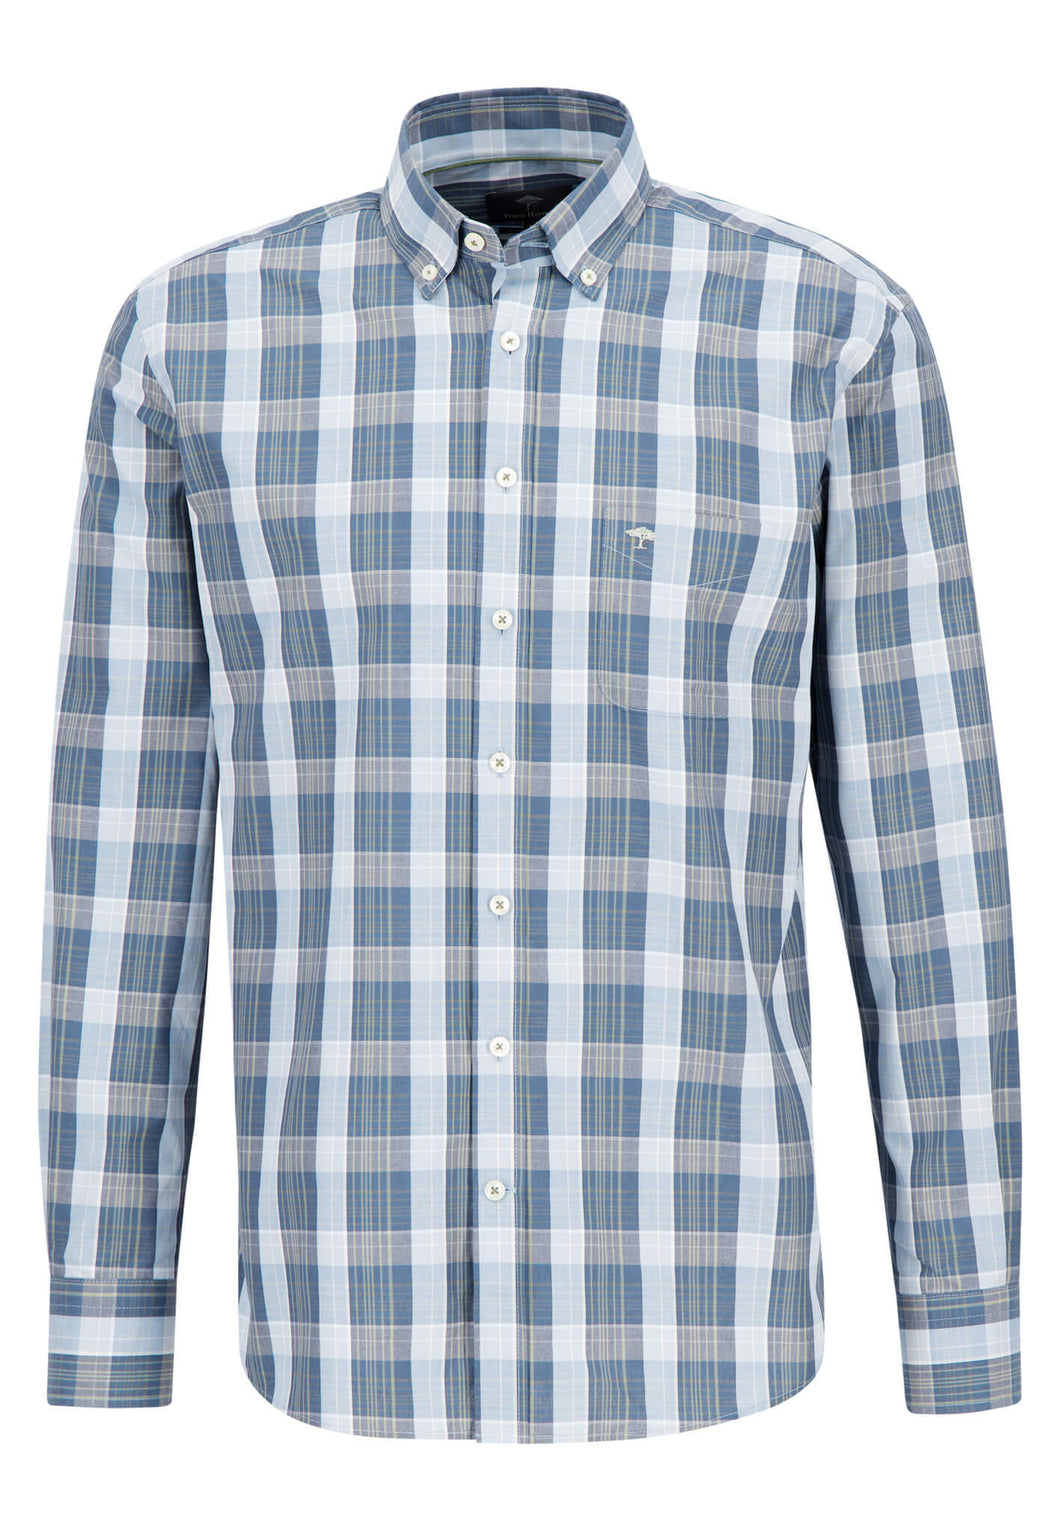 Fynch-Hatton Check Shirt Light Blue 13048110